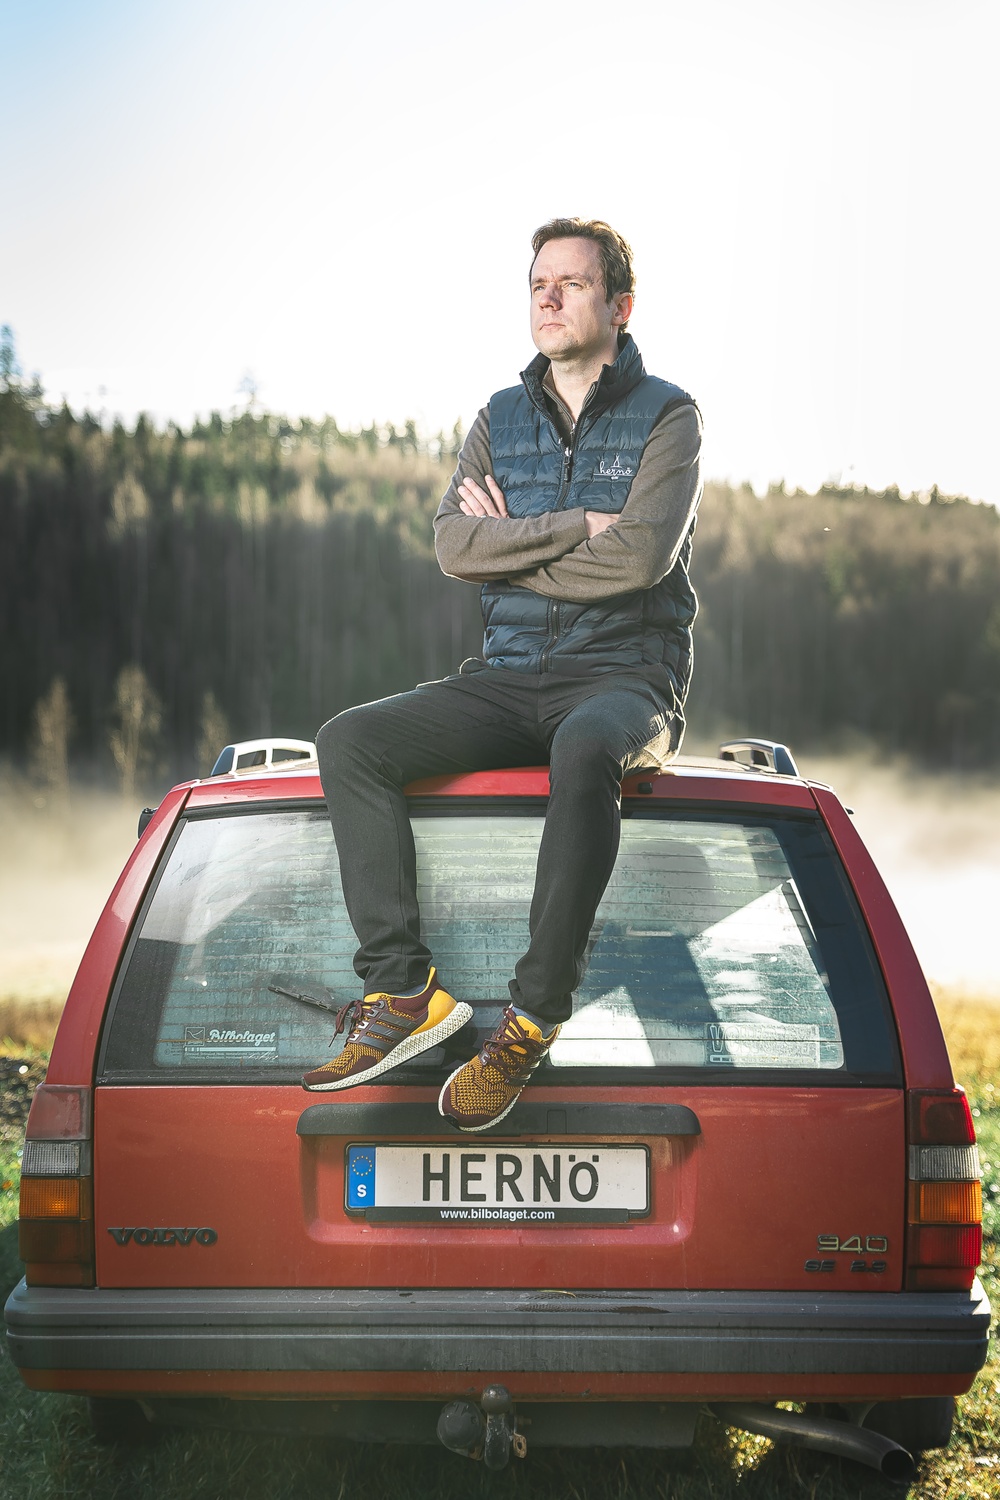 Founder and Master Distiller, Hernö Gin. Jon Hillgren with his favourite car.